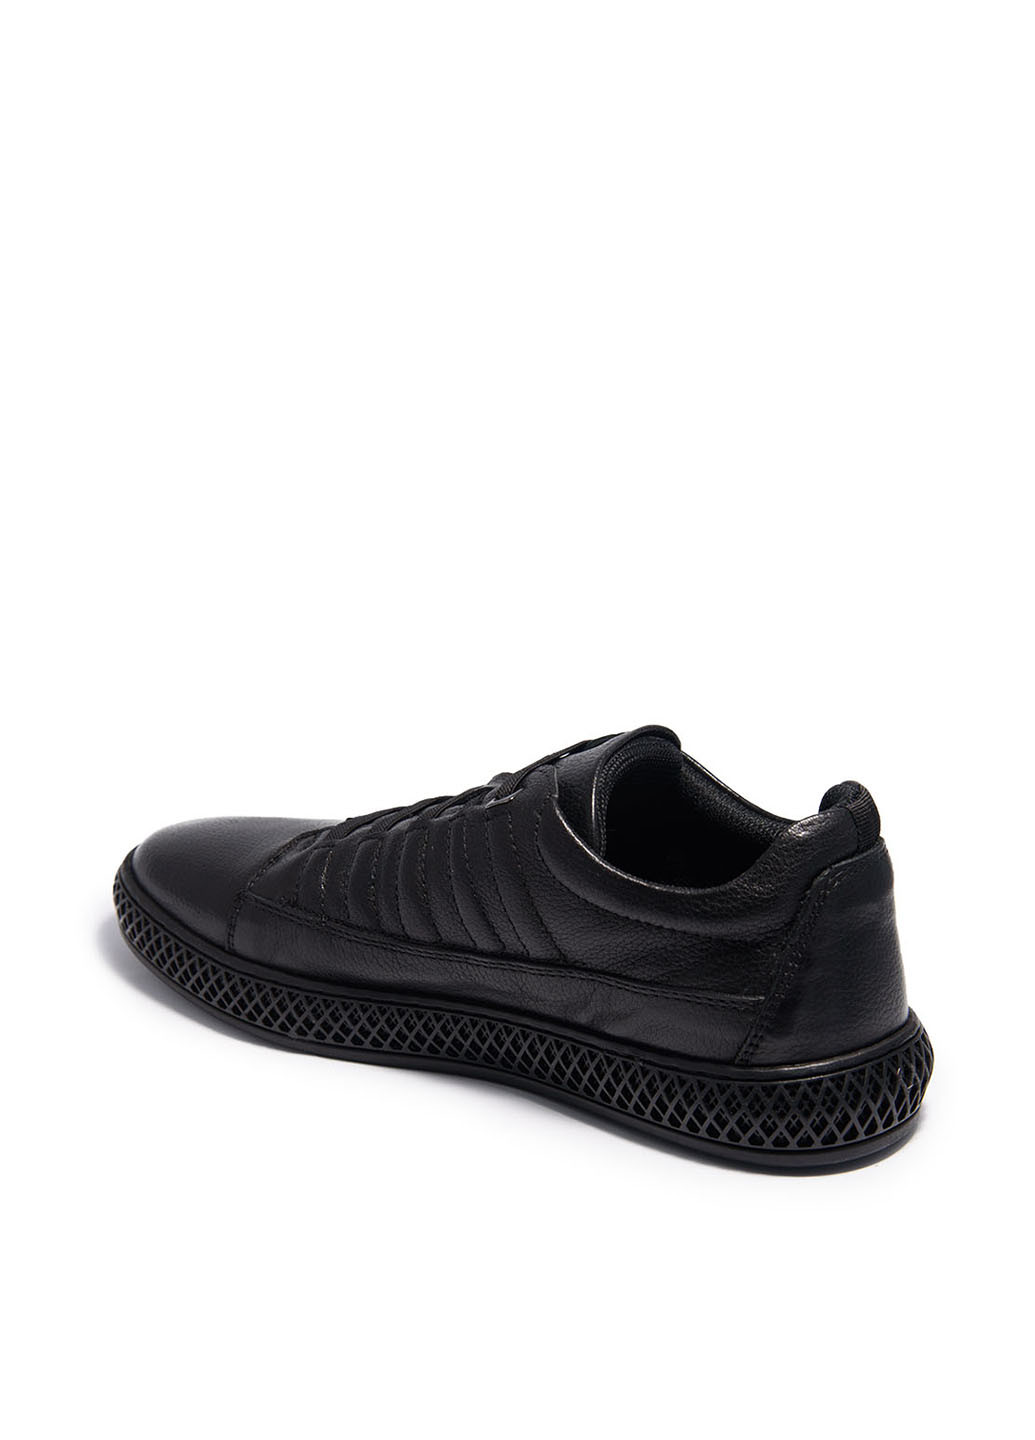 Черные спортивные туфли Luciano Bellini на шнурках